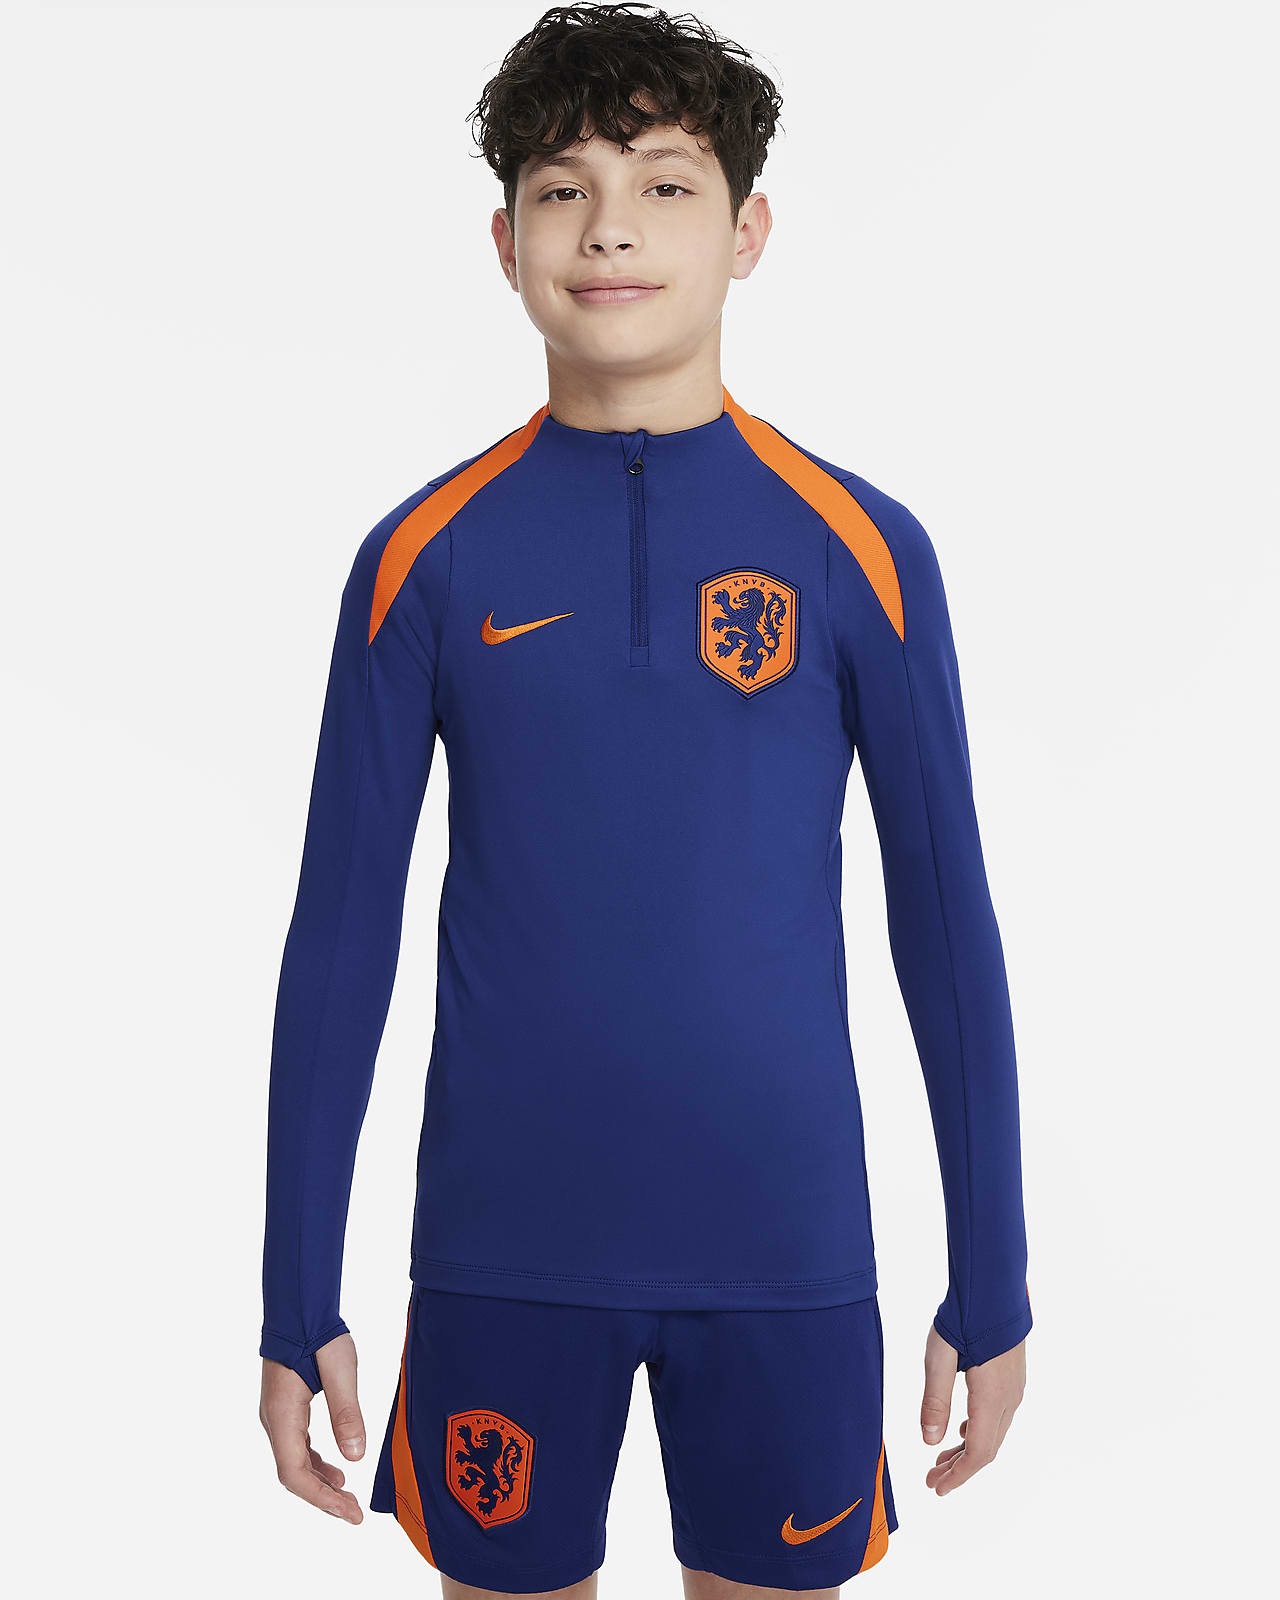 Ποδοσφαιρική μπλούζα προπόνησης Nike Dri-FIT Κάτω Χώρες Strike για μεγάλα παιδιά